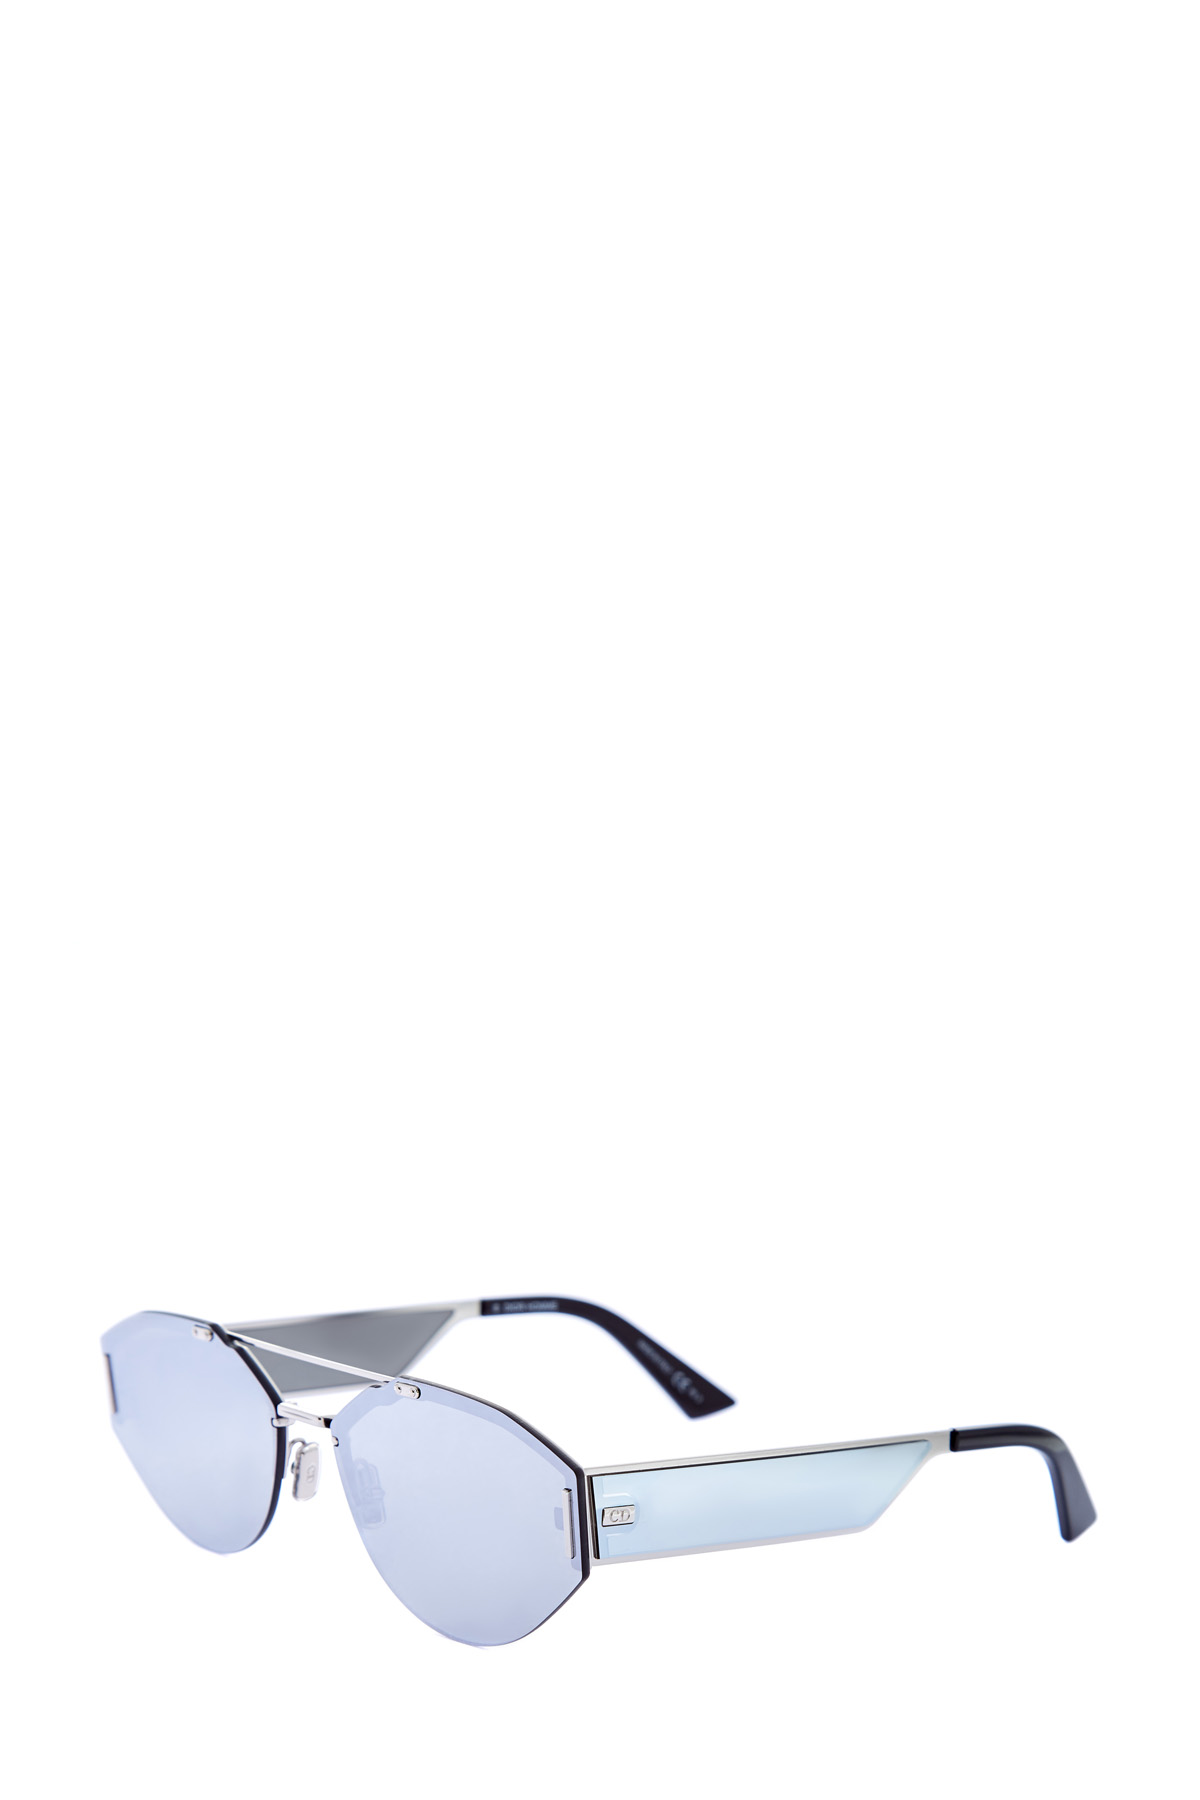 Очки оригинальной формы с прозрачными вставками на дужках DIOR (sunglasses) men, размер 40 - фото 3